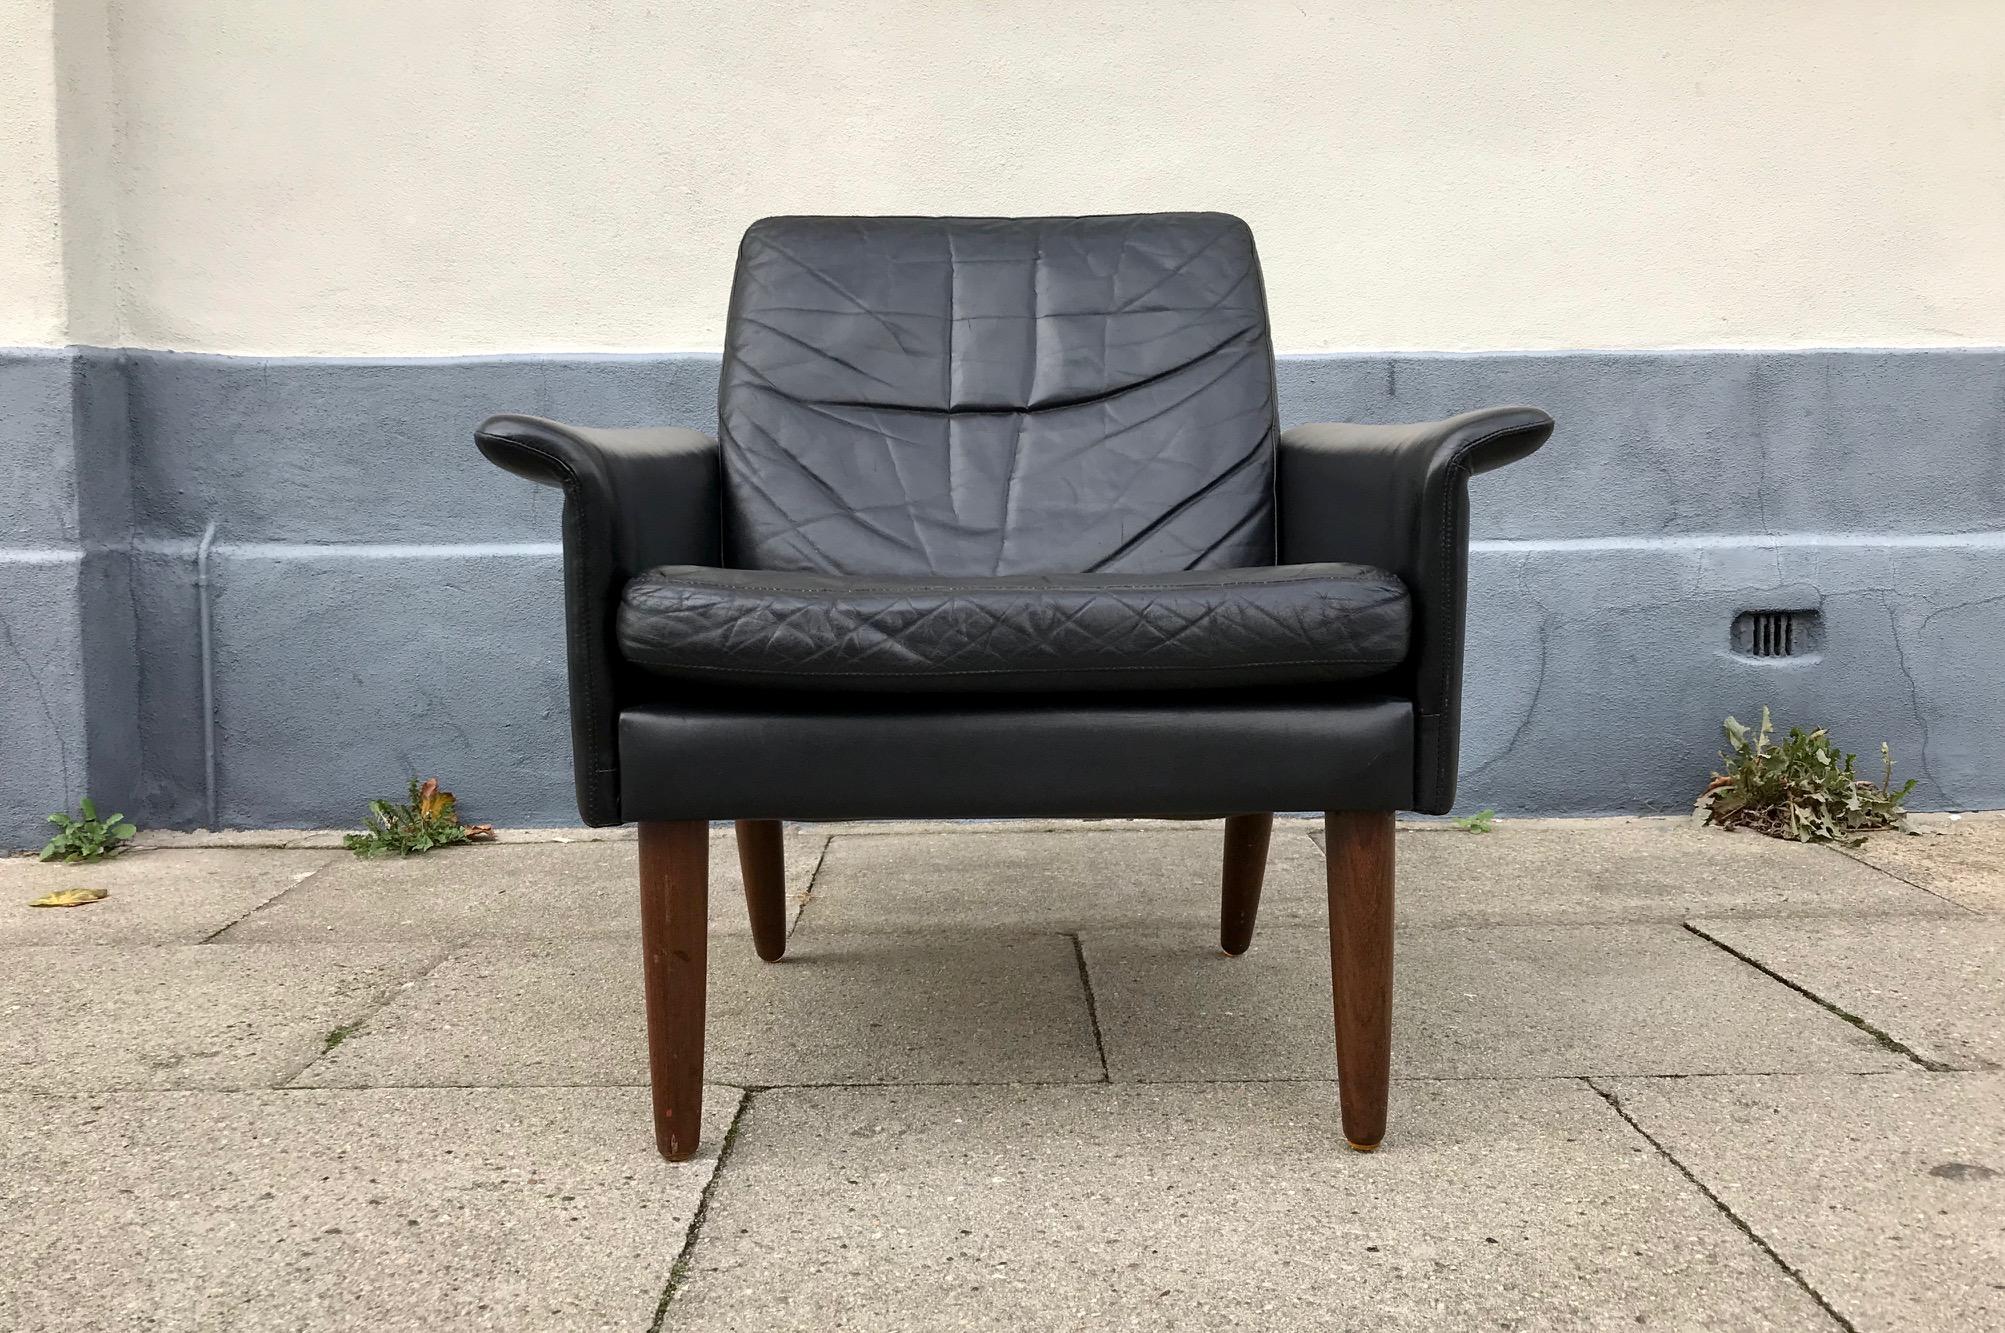 Chaise longue Hans Olsen entièrement originale, conçue au début des années 1960 et fabriquée chez CS Moebler au Danemark. Cet exemplaire est recouvert de son cuir noir souple d'origine et possède des pieds coniques en teck massif.